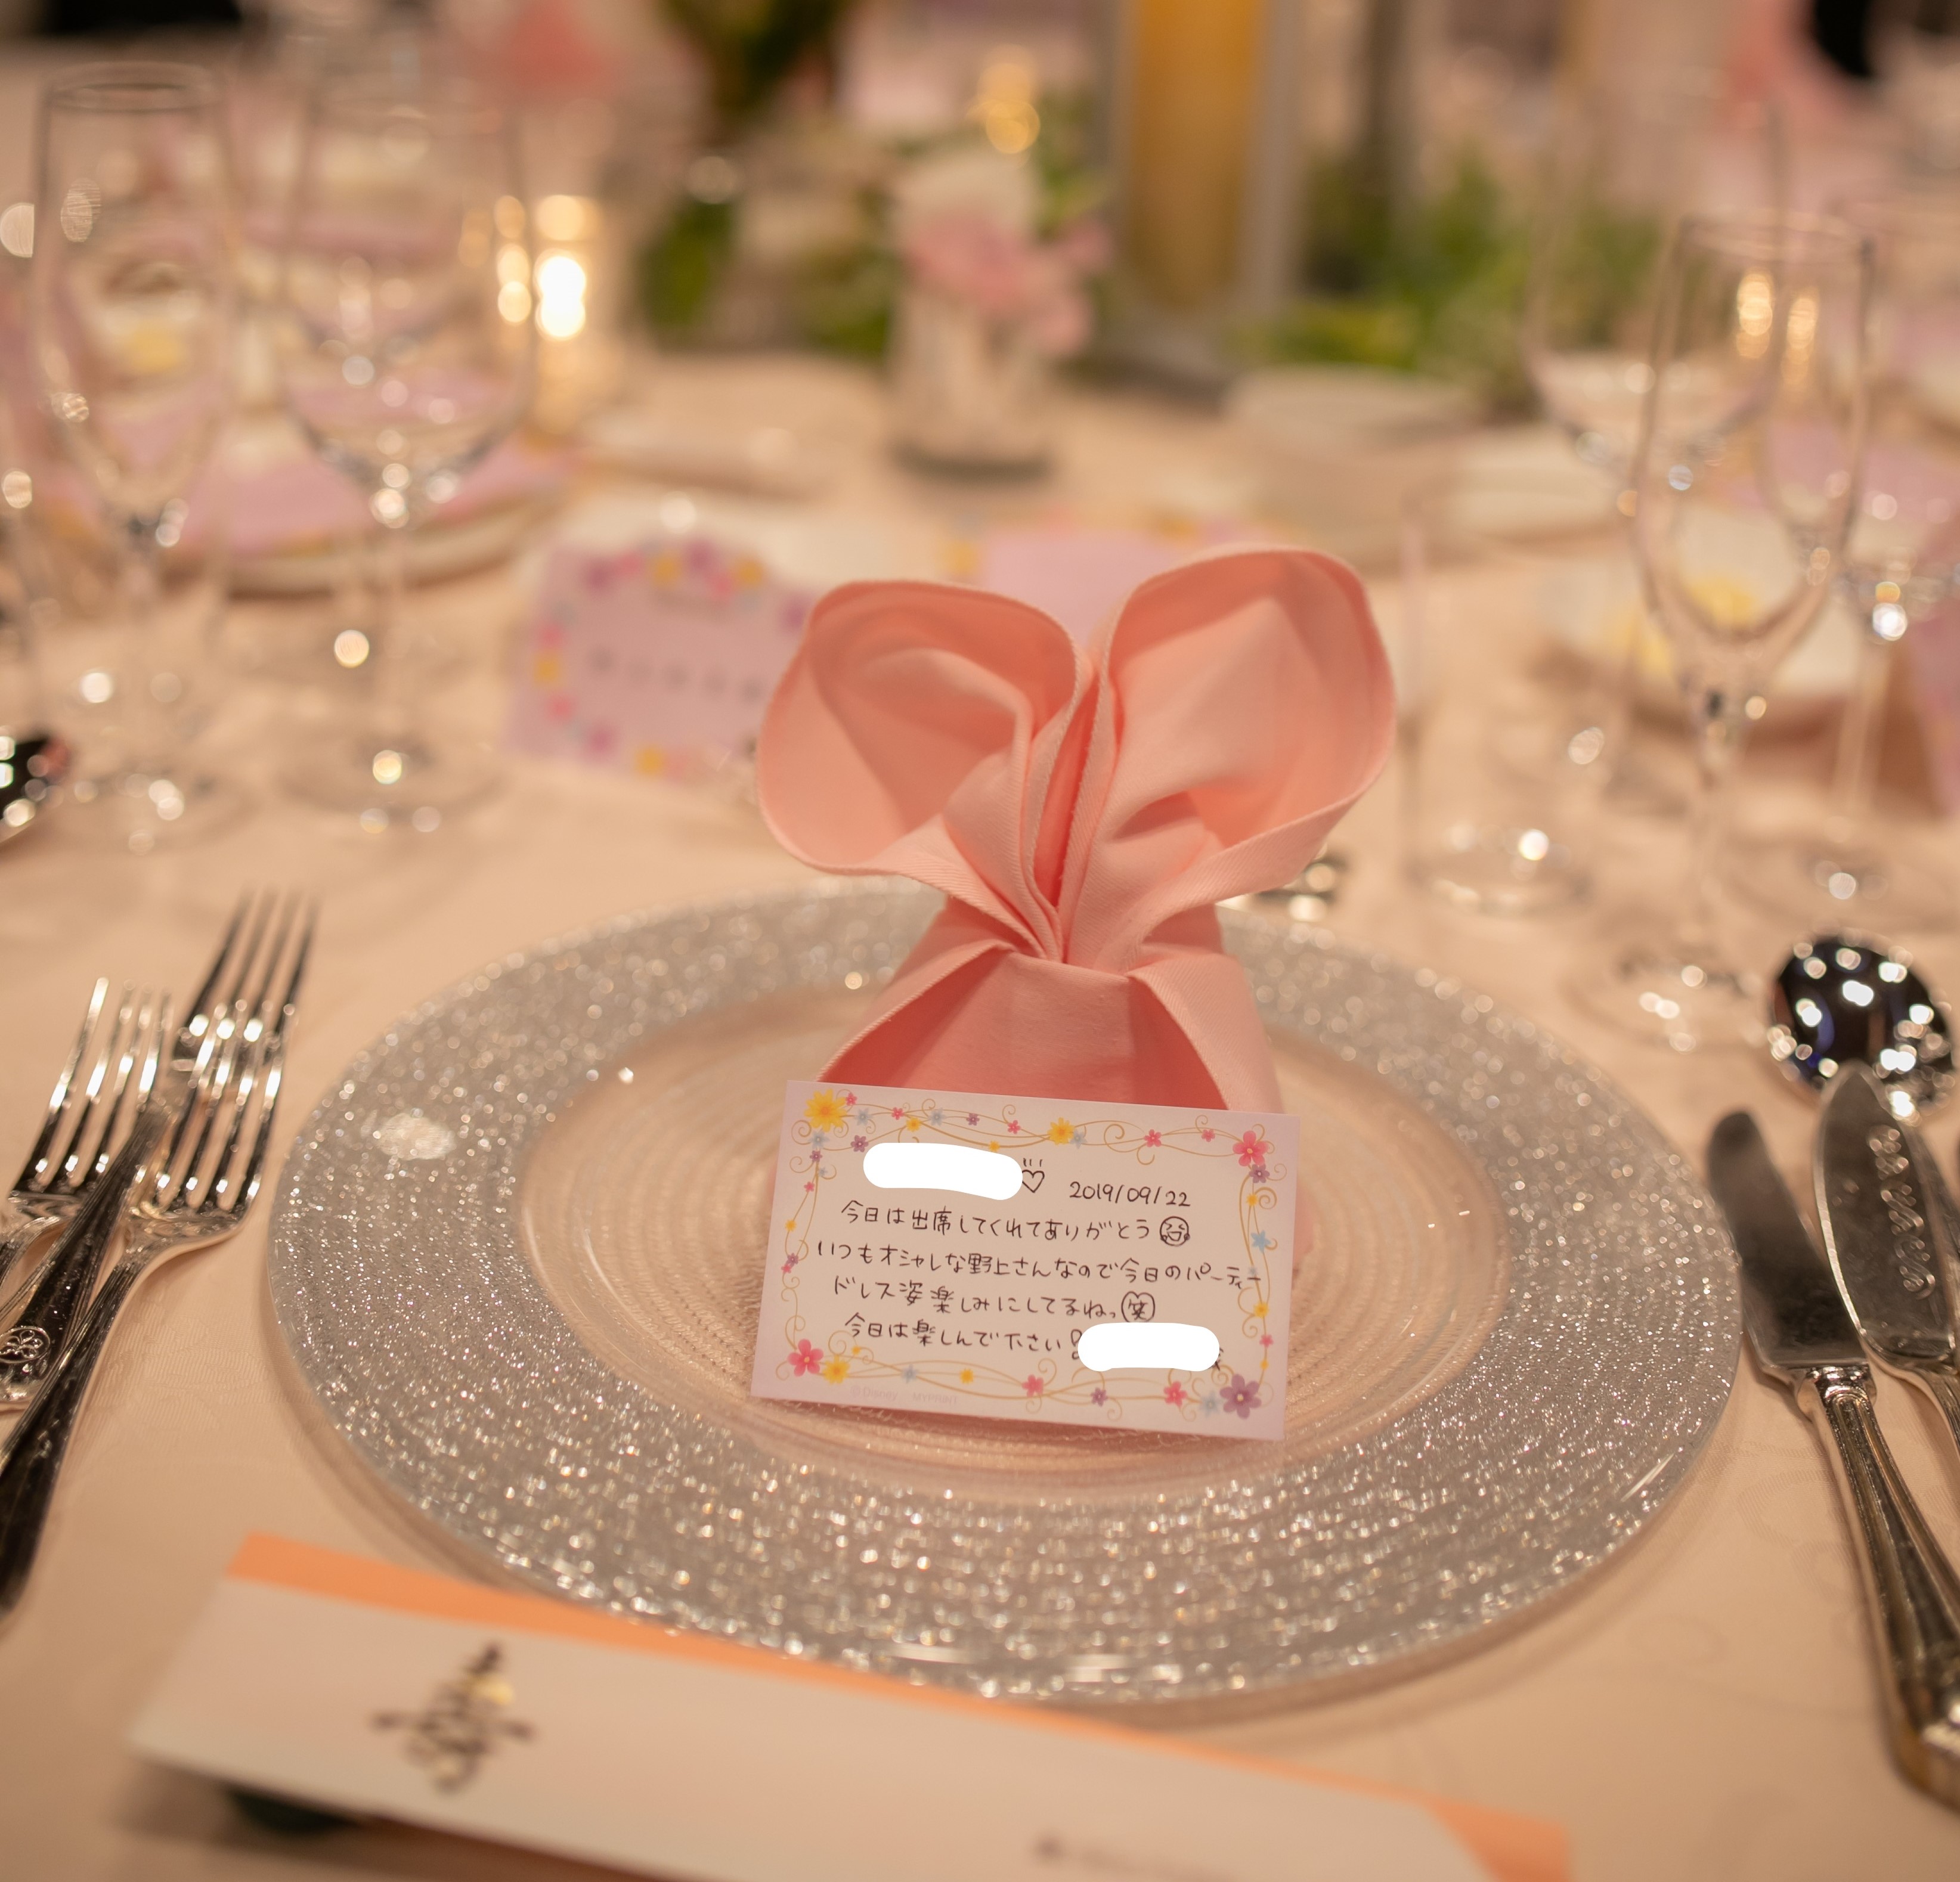 テーブルコーディネートが素敵になる ナフキン の折り方 プランナーブログ 大阪のホテルウエディング 結婚式 ホテル日航大阪 Hotel Nikko Osaka 公式サイト